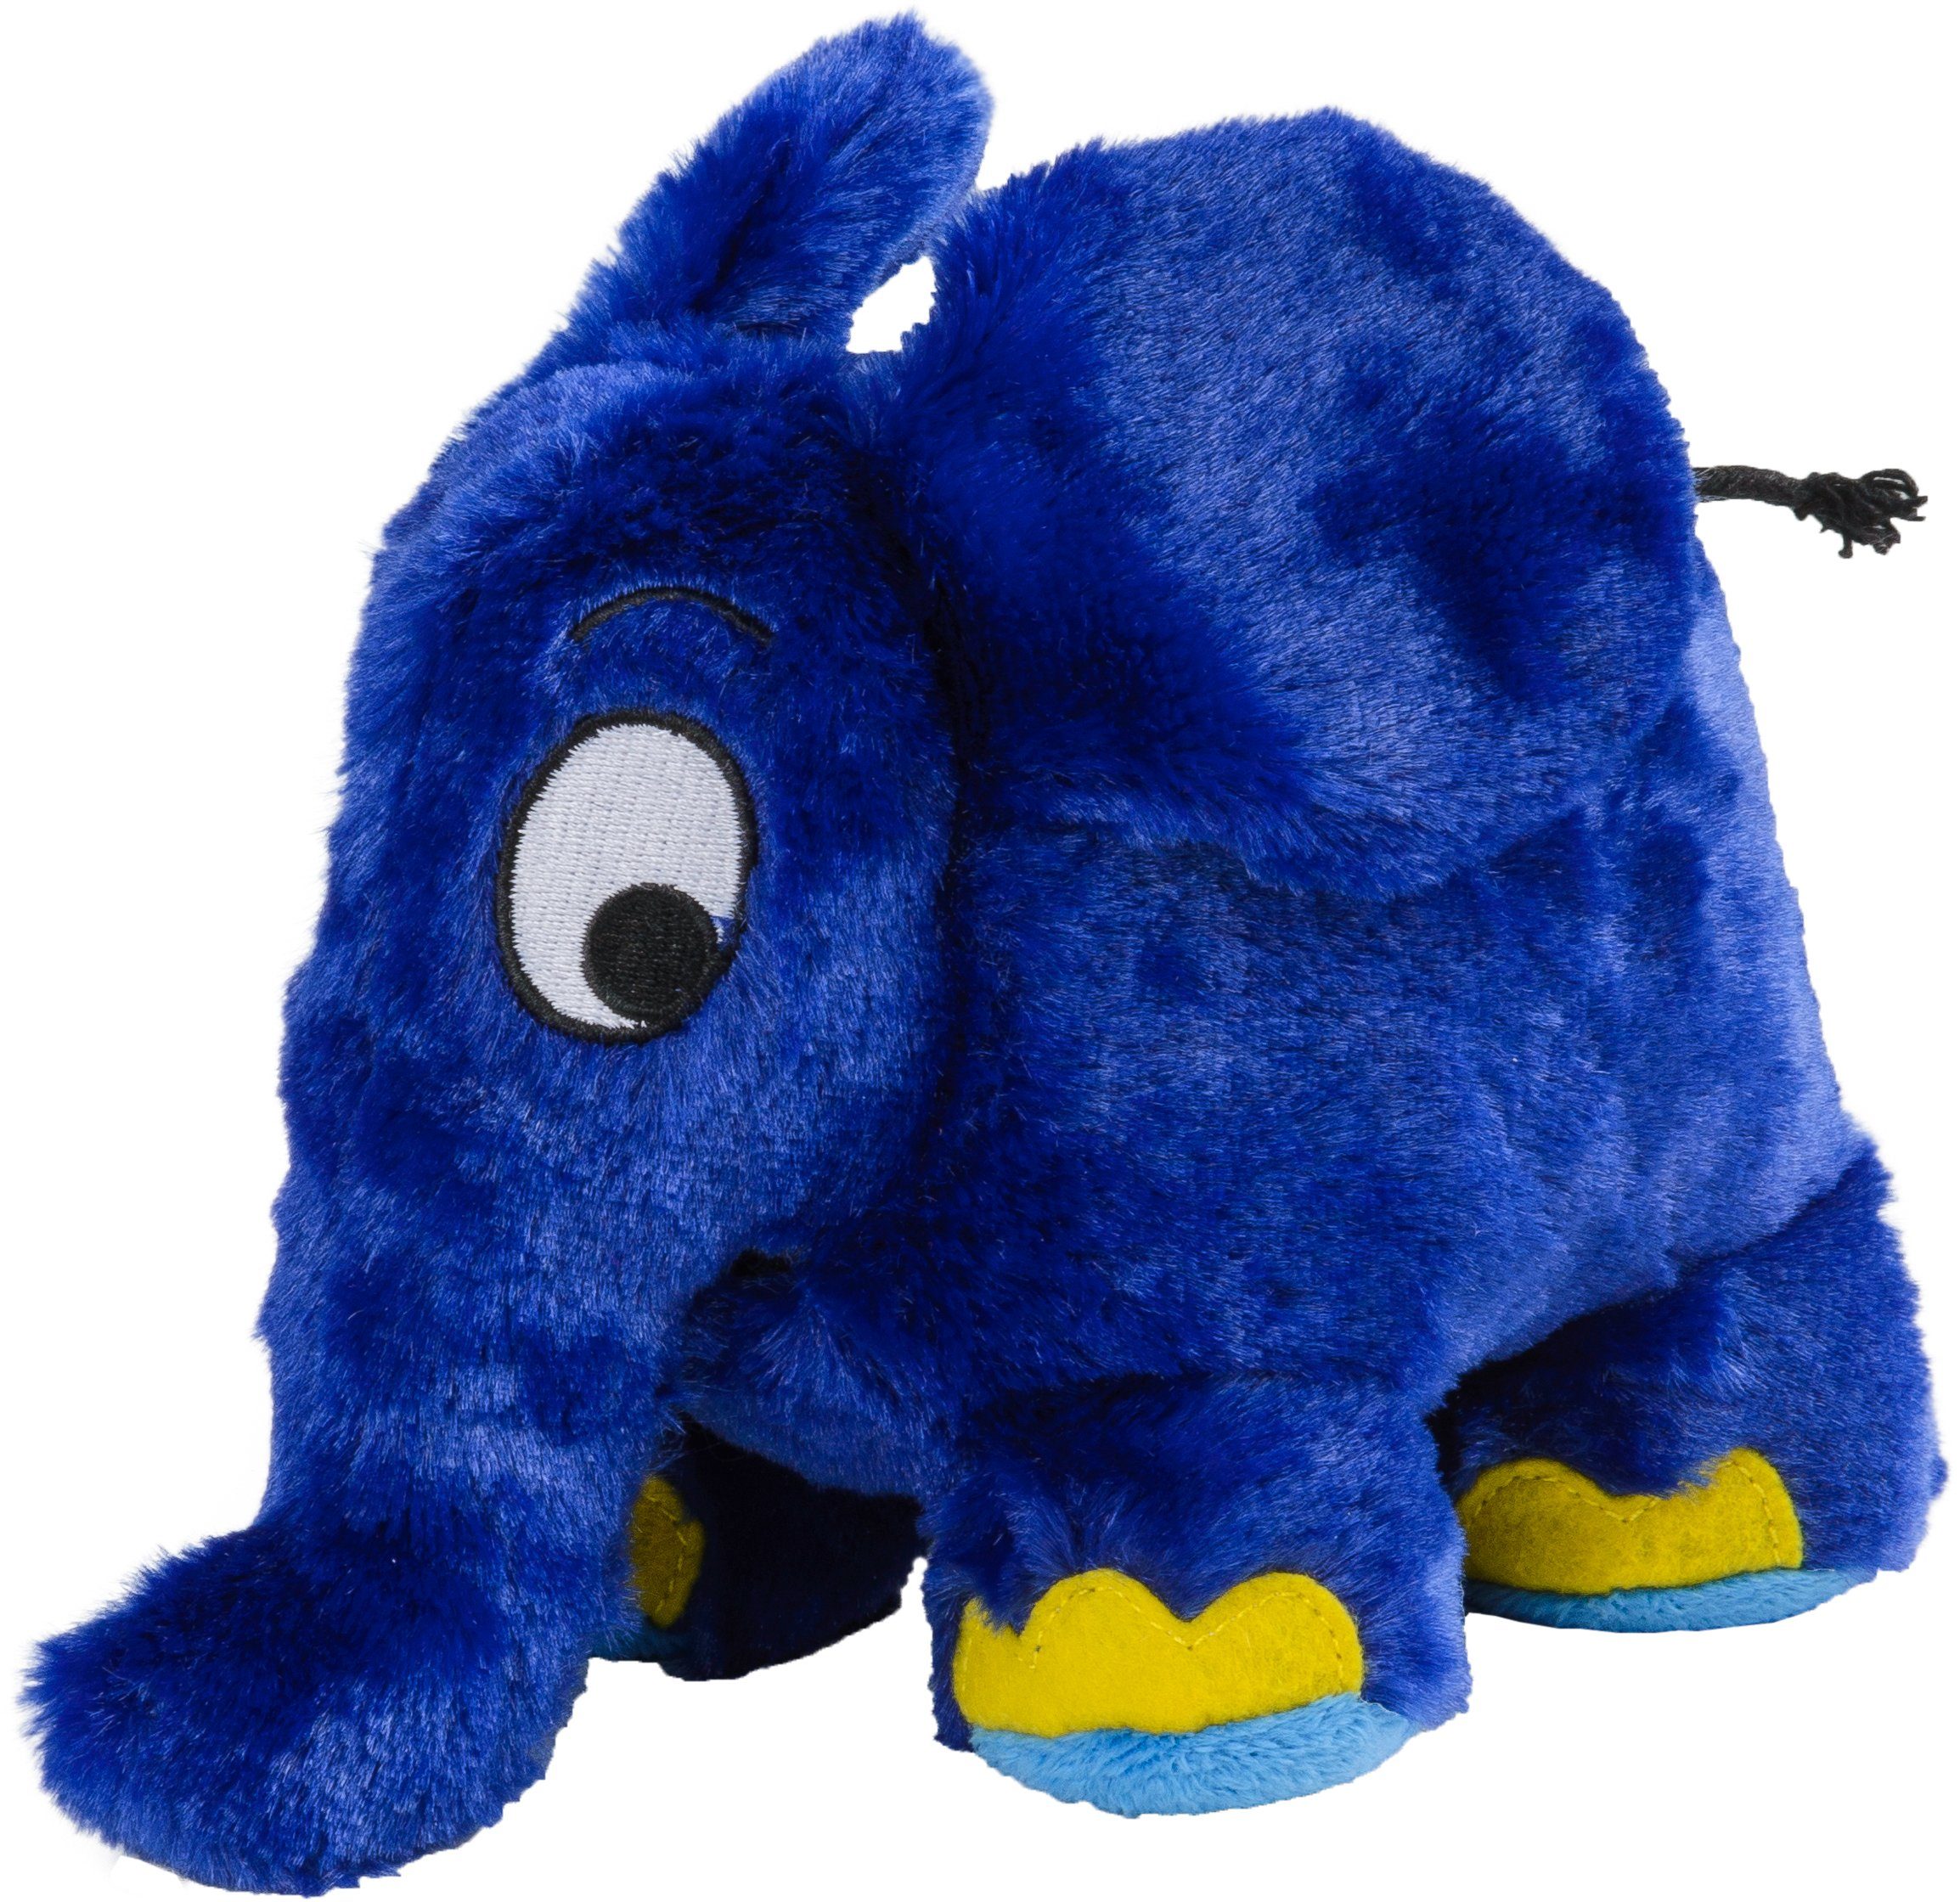 Warmies® Wärmekissen Der blaue Elefant der Maus, die für Backofen den und Mikrowelle Sendung mit aus der